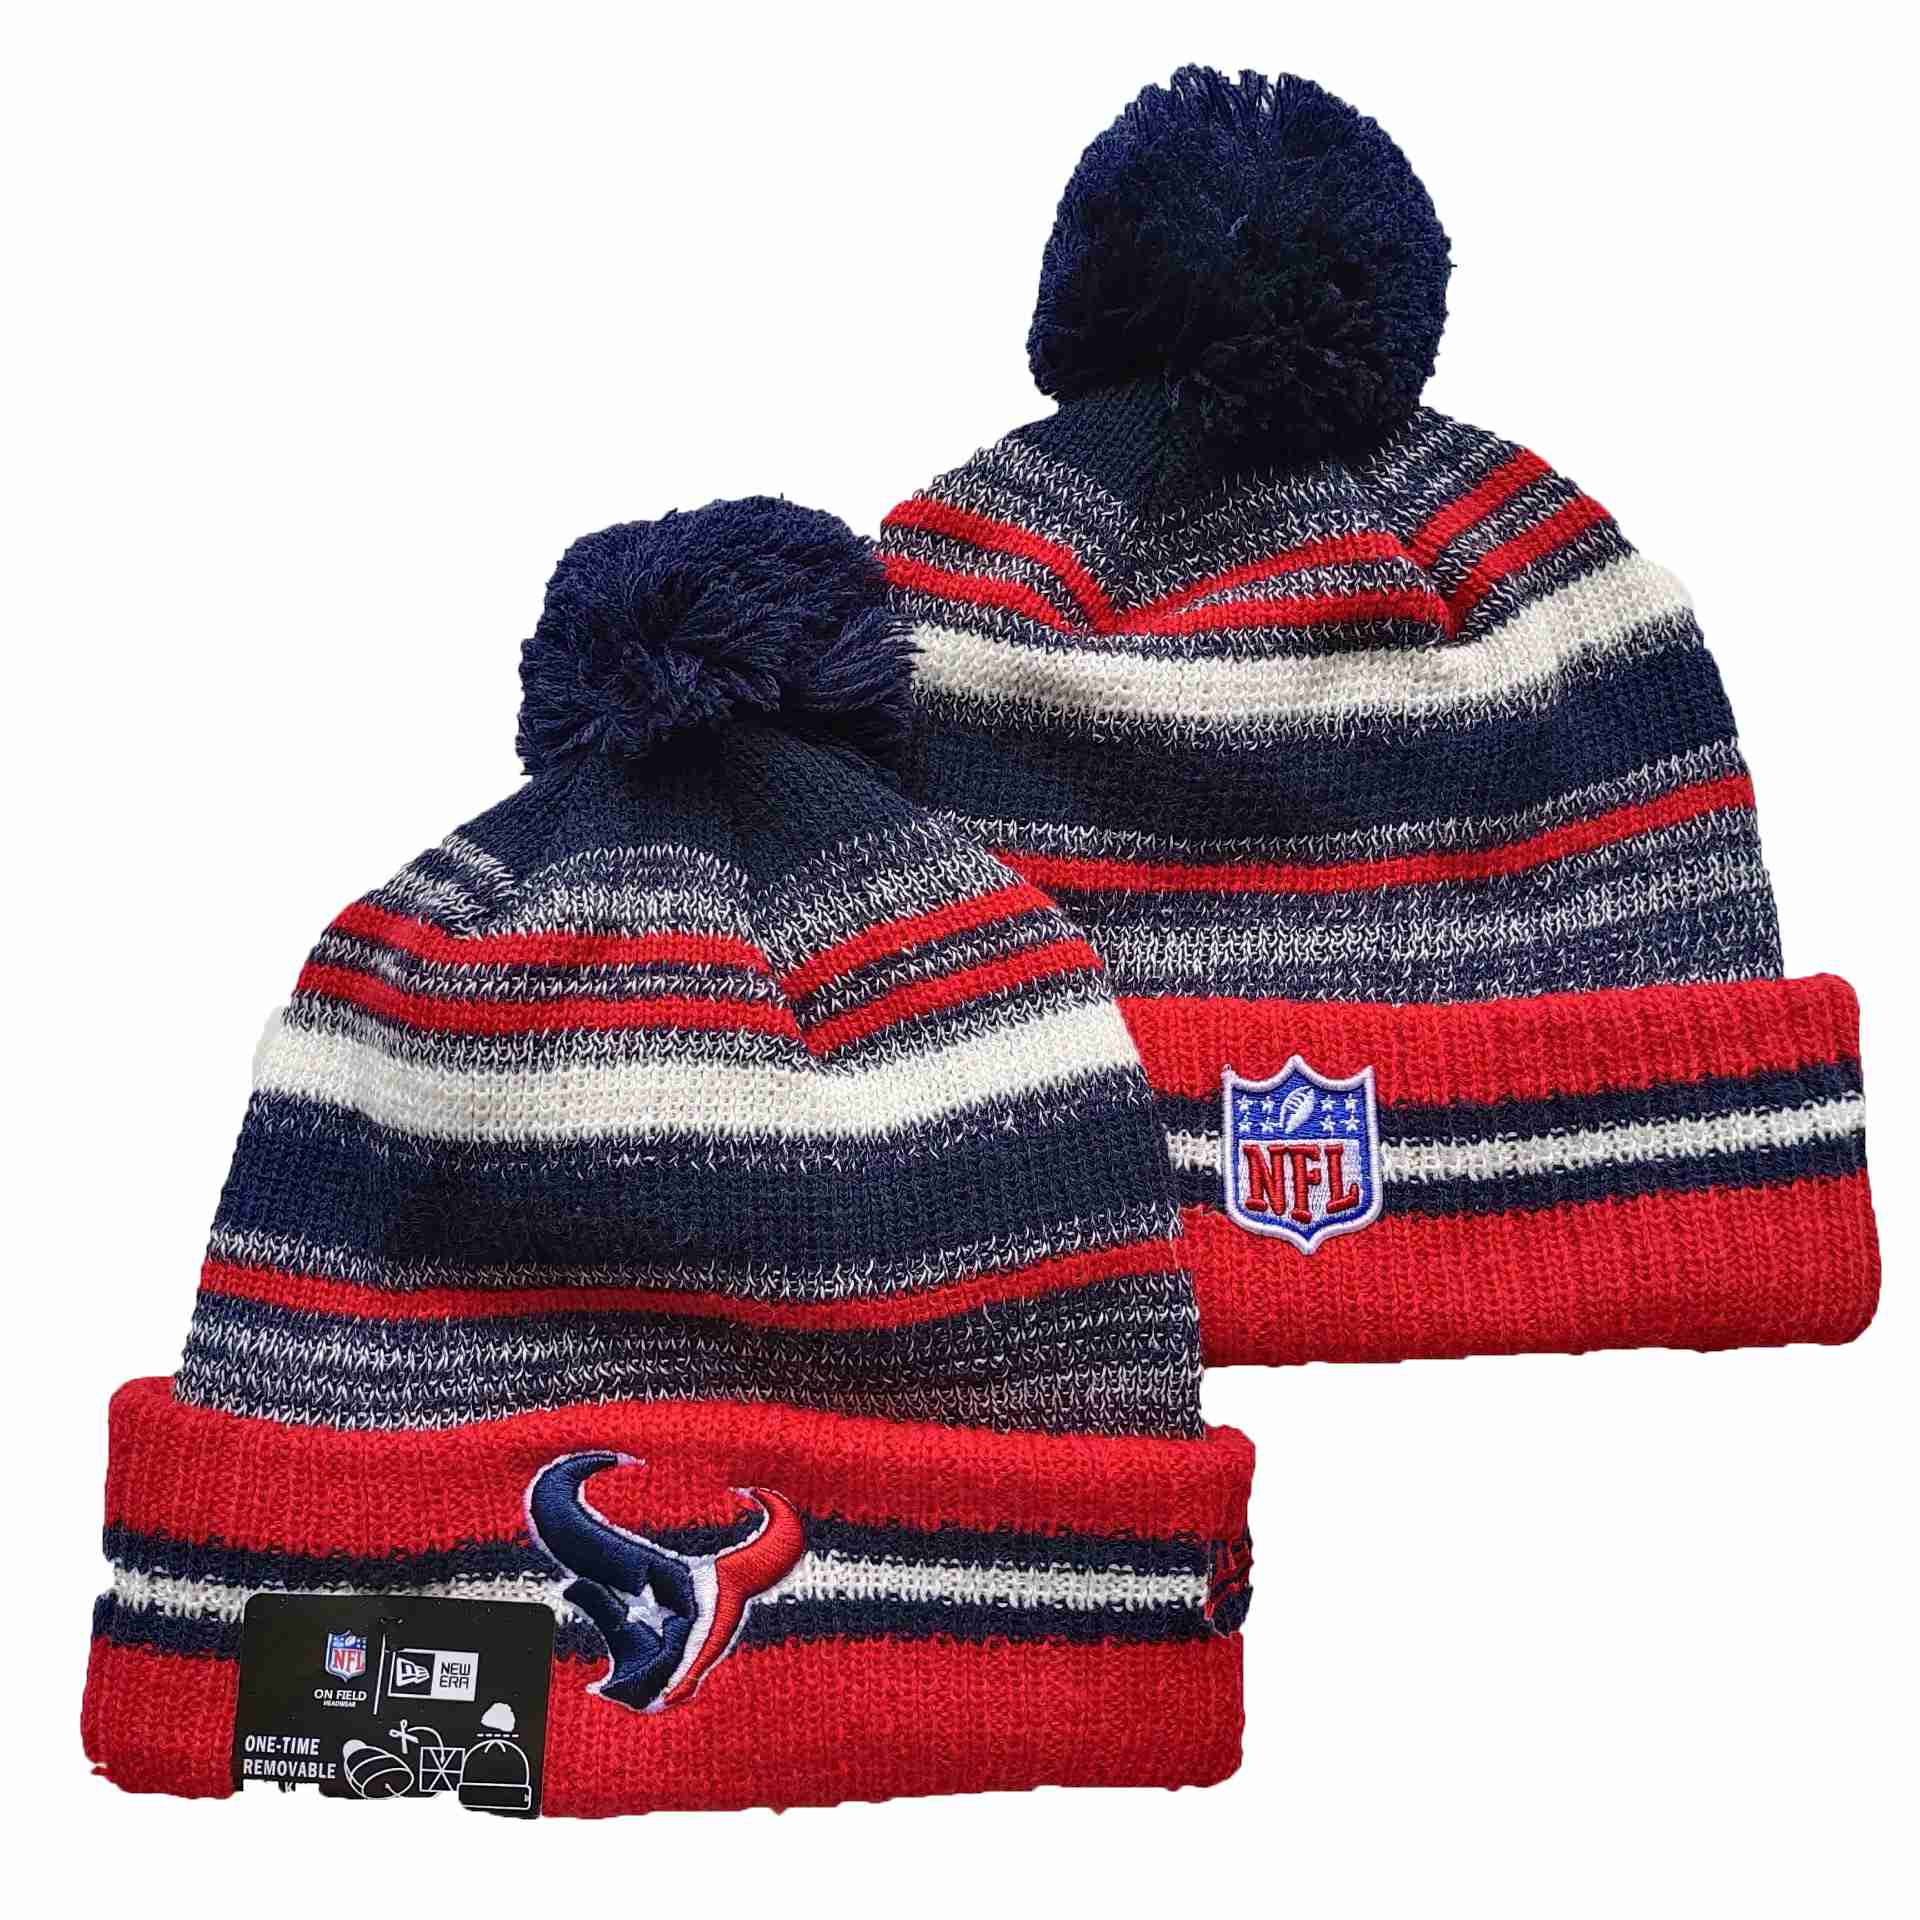 NFL Houston Texans Beanies Knit Hats-YD1208